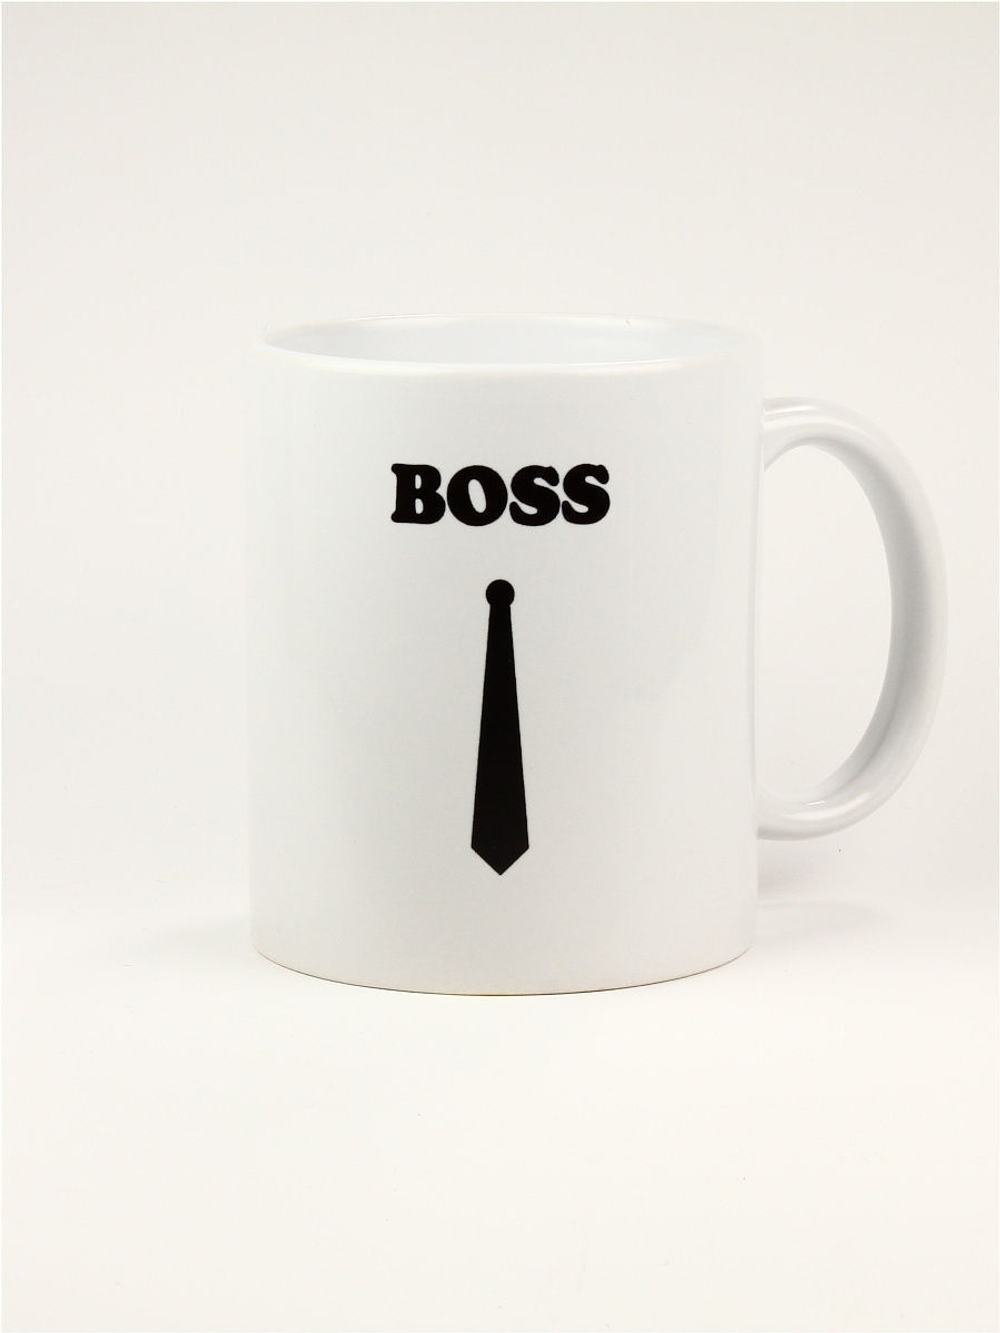 Кружка подарок сувенир "BOSS", директору, руководителю, начальнику, боссу